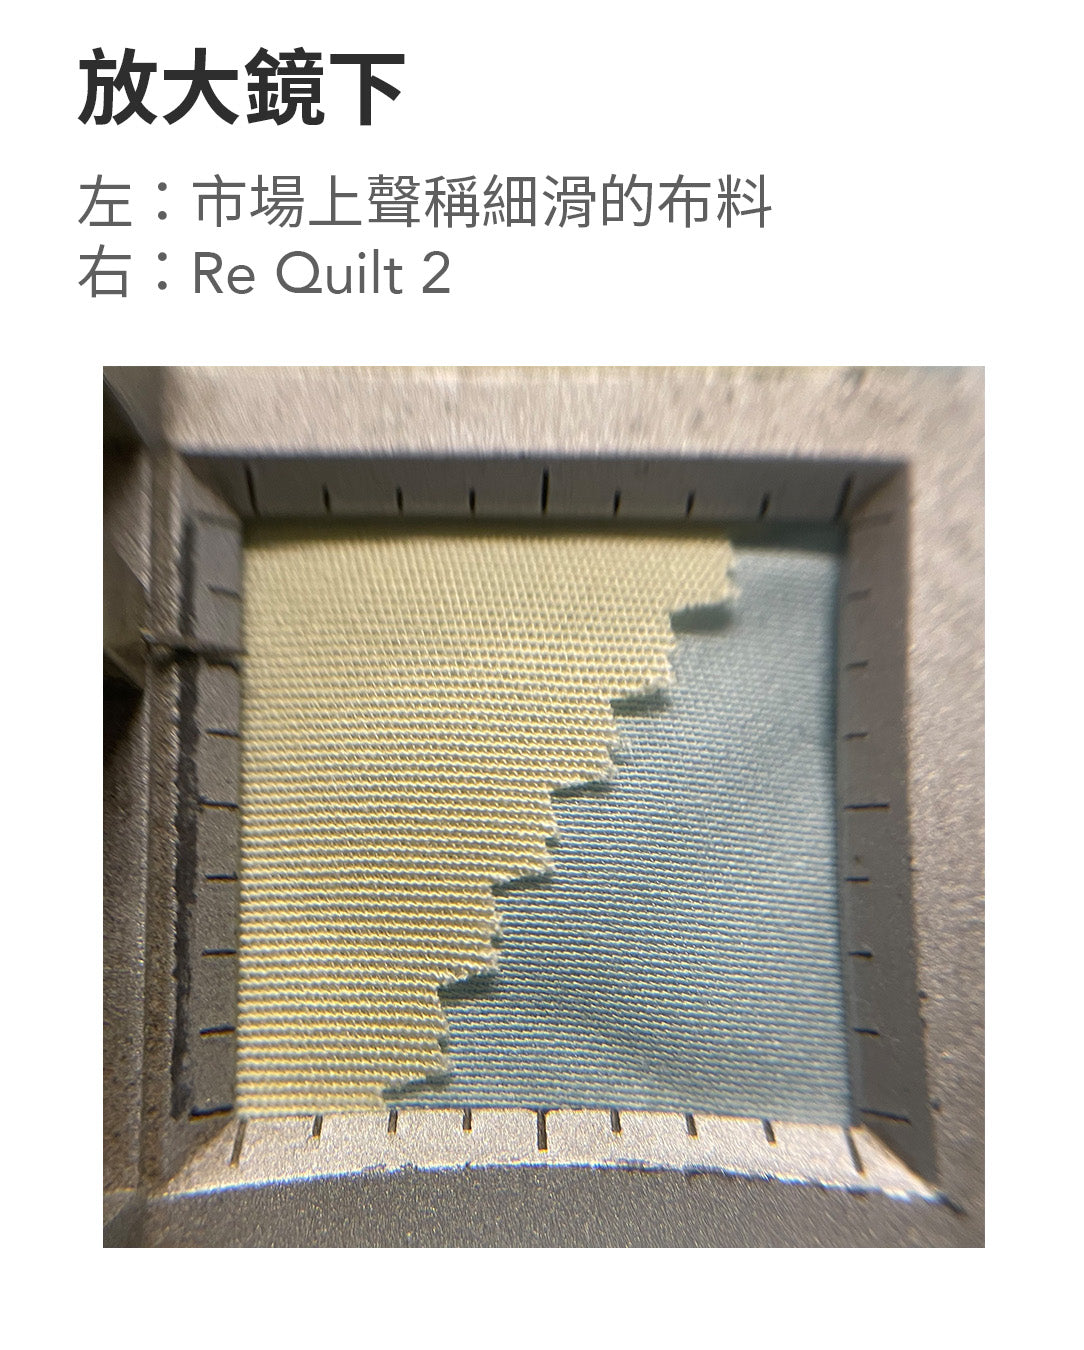 Re Quilt 2-香港被子-被子布料